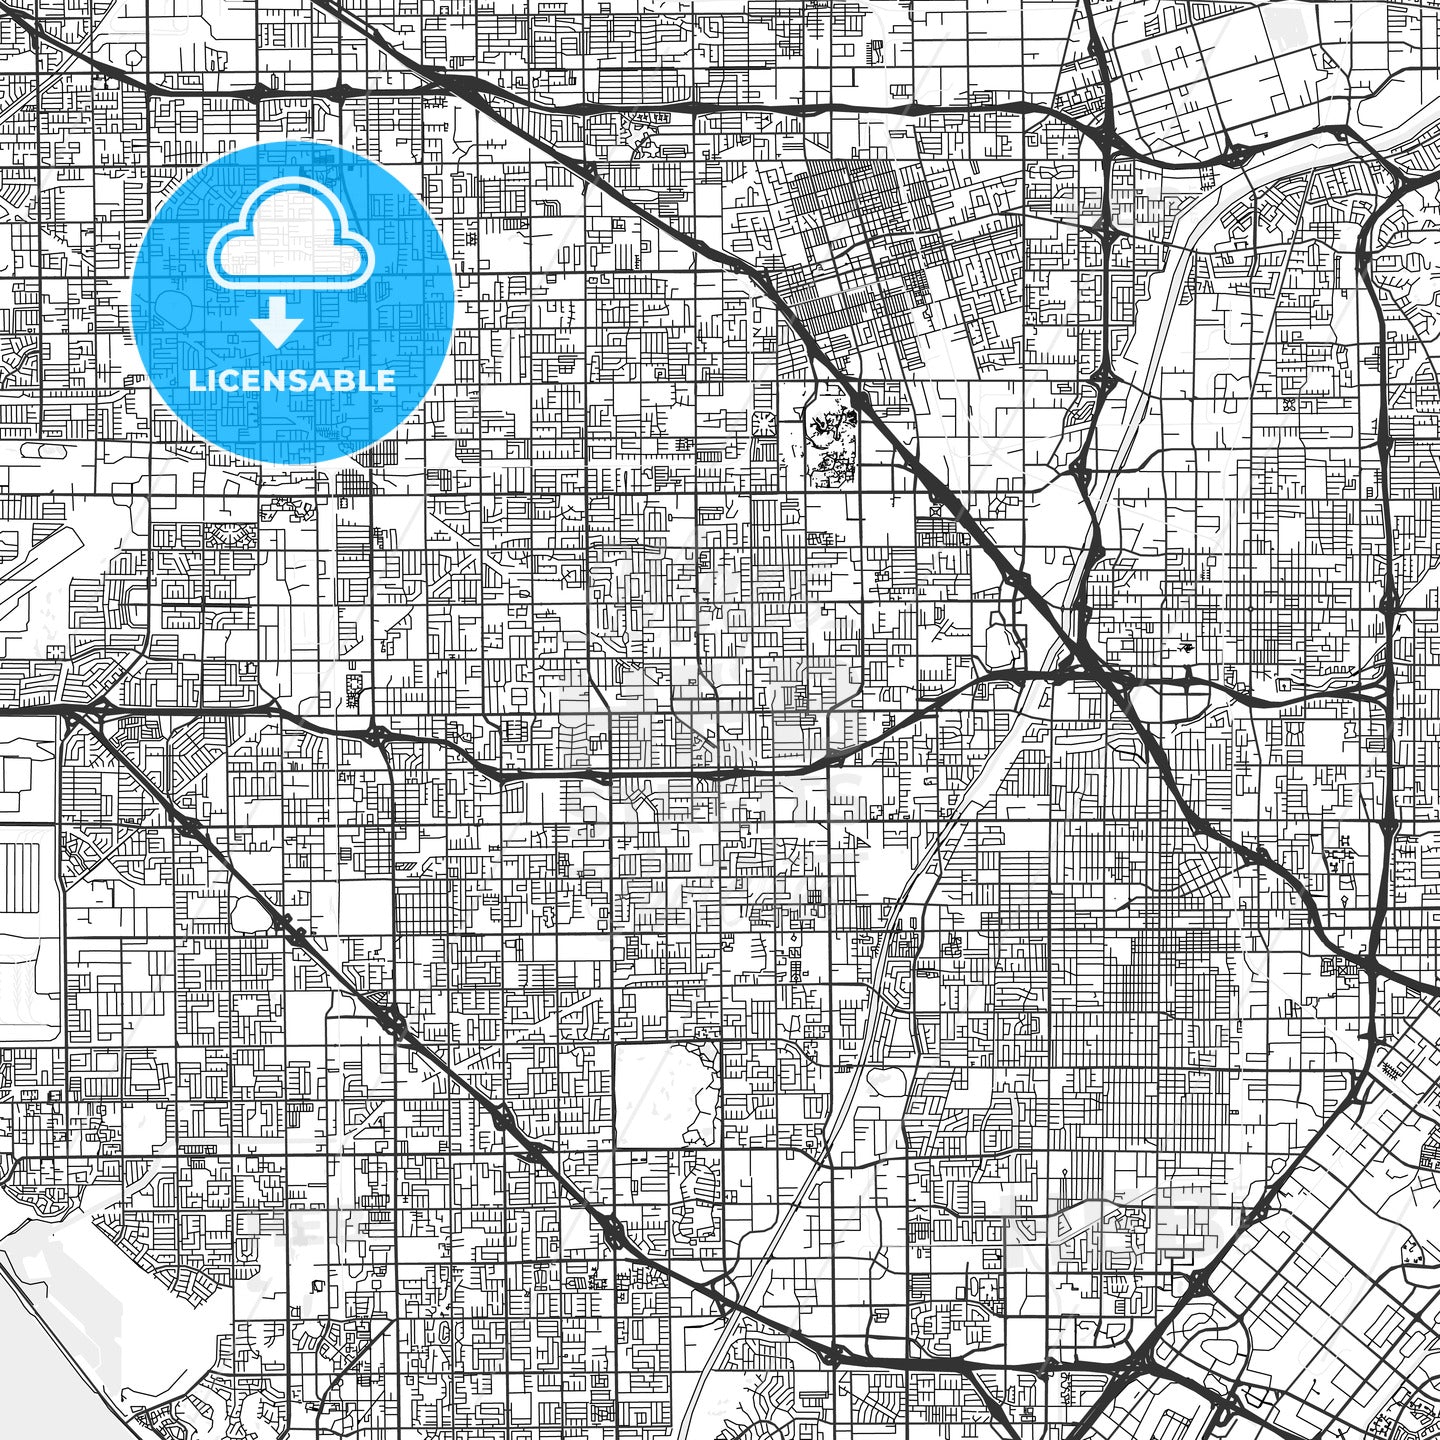 Garden Grove, California - Area Map - Light